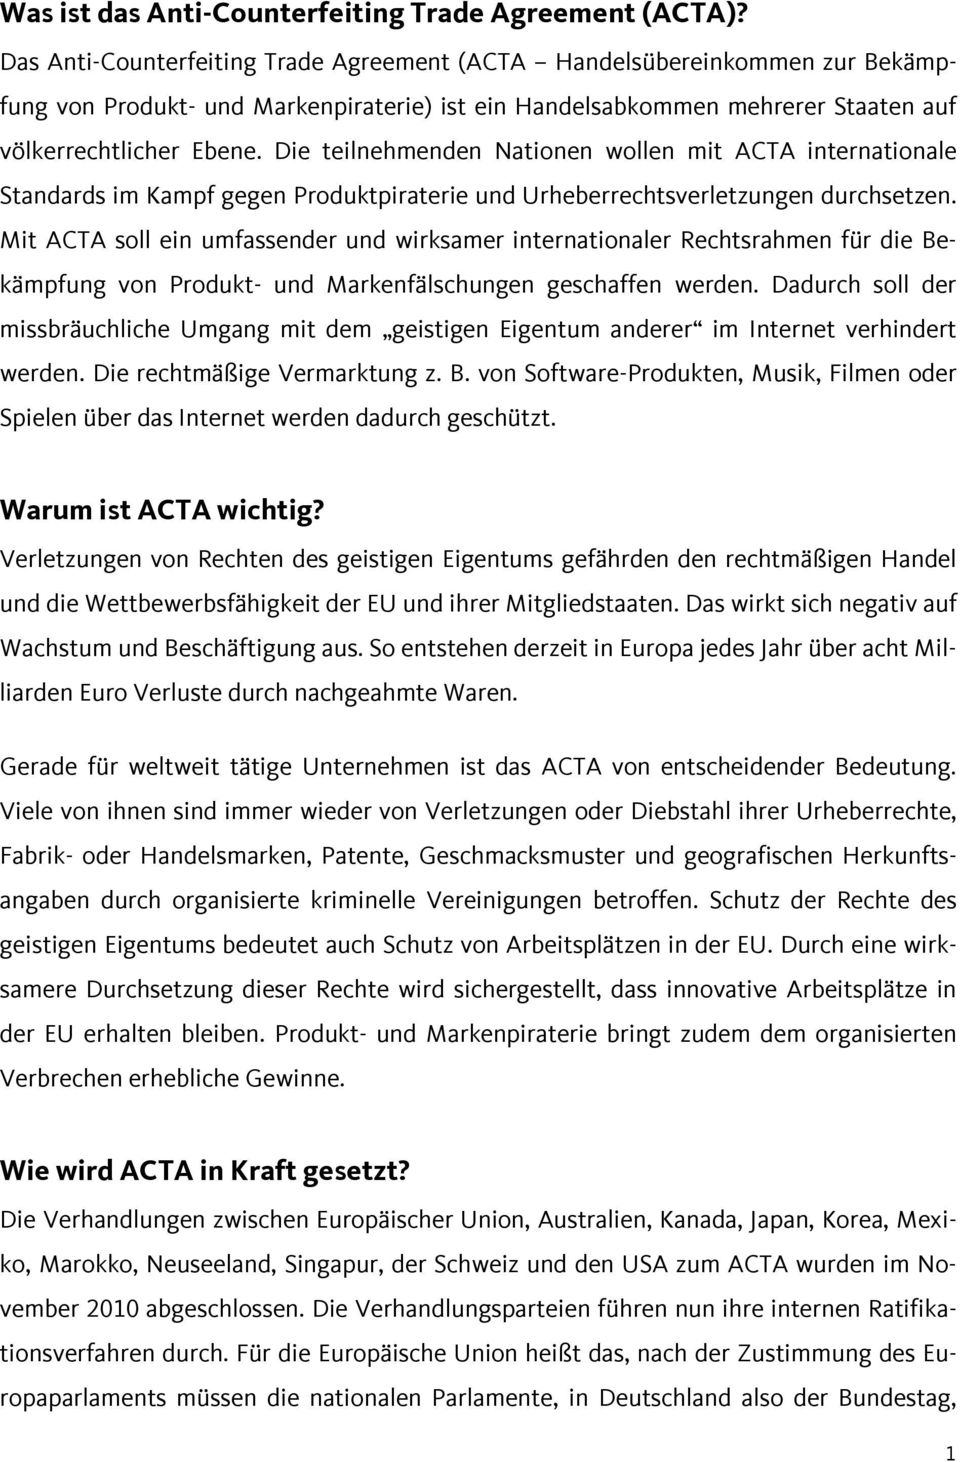 Die teilnehmenden Nationen wollen mit ACTA internationale Standards im Kampf gegen Produktpiraterie und Urheberrechtsverletzungen durchsetzen.